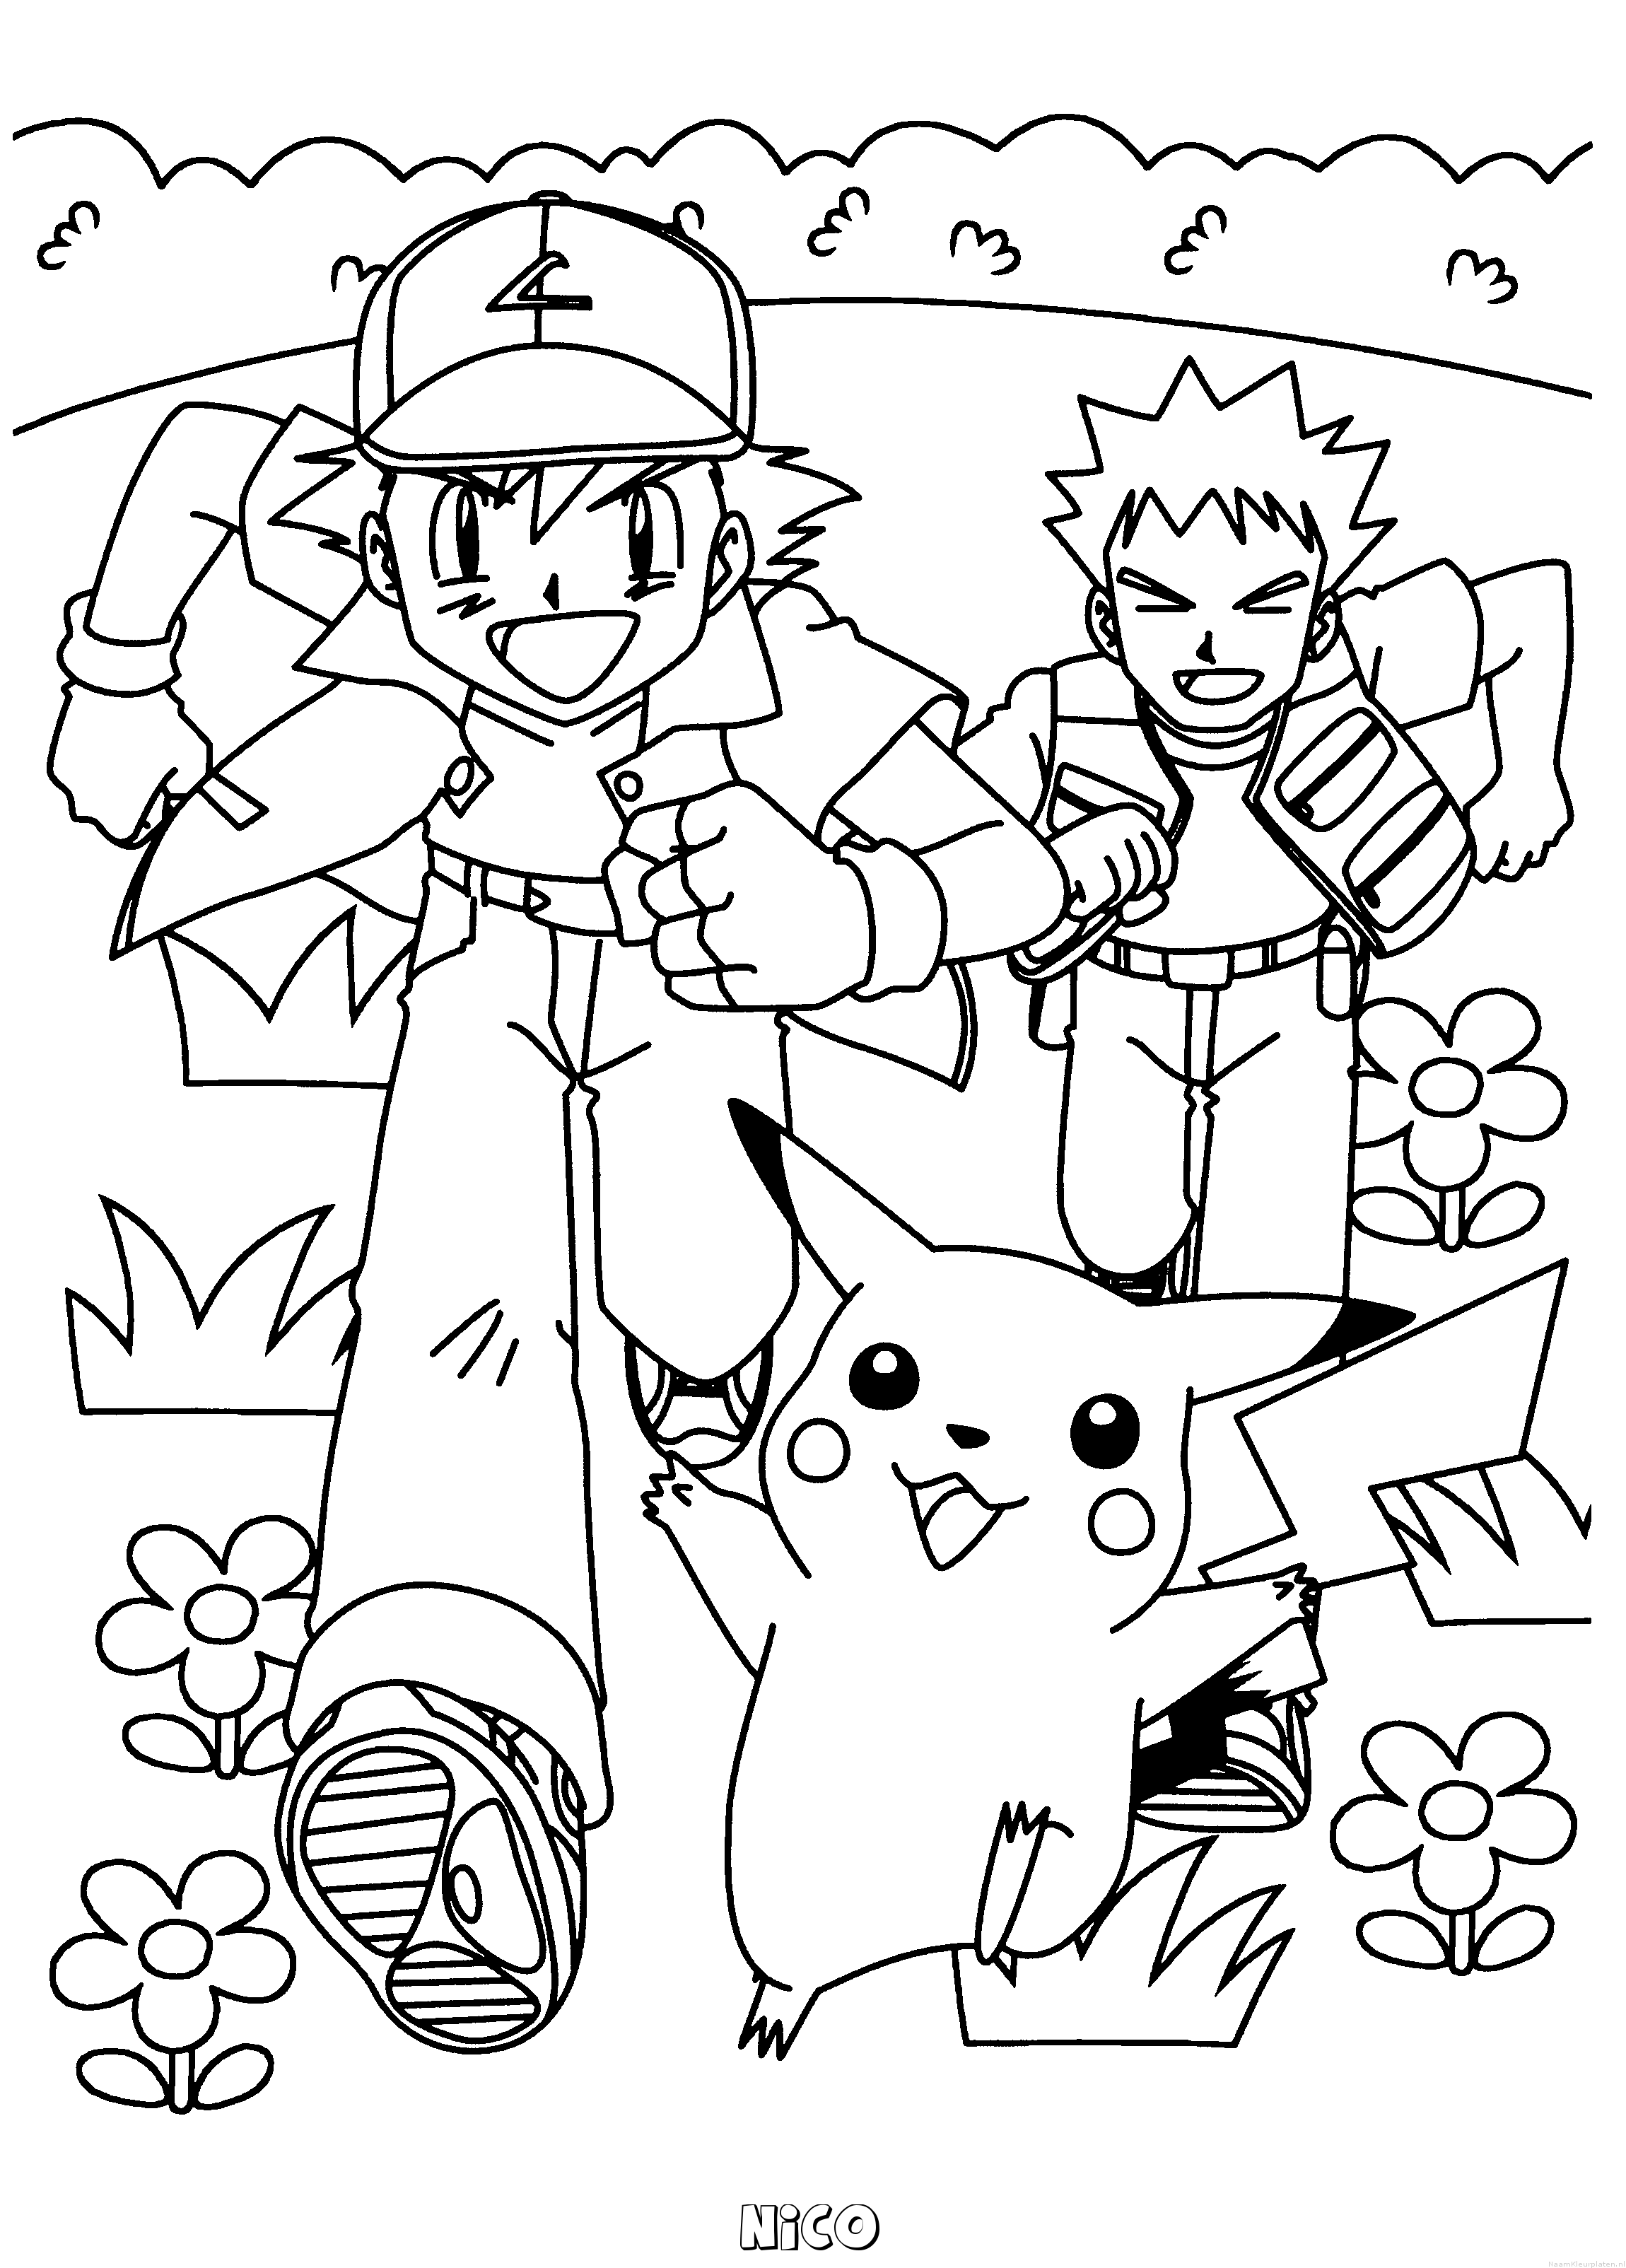 Nico pokemon